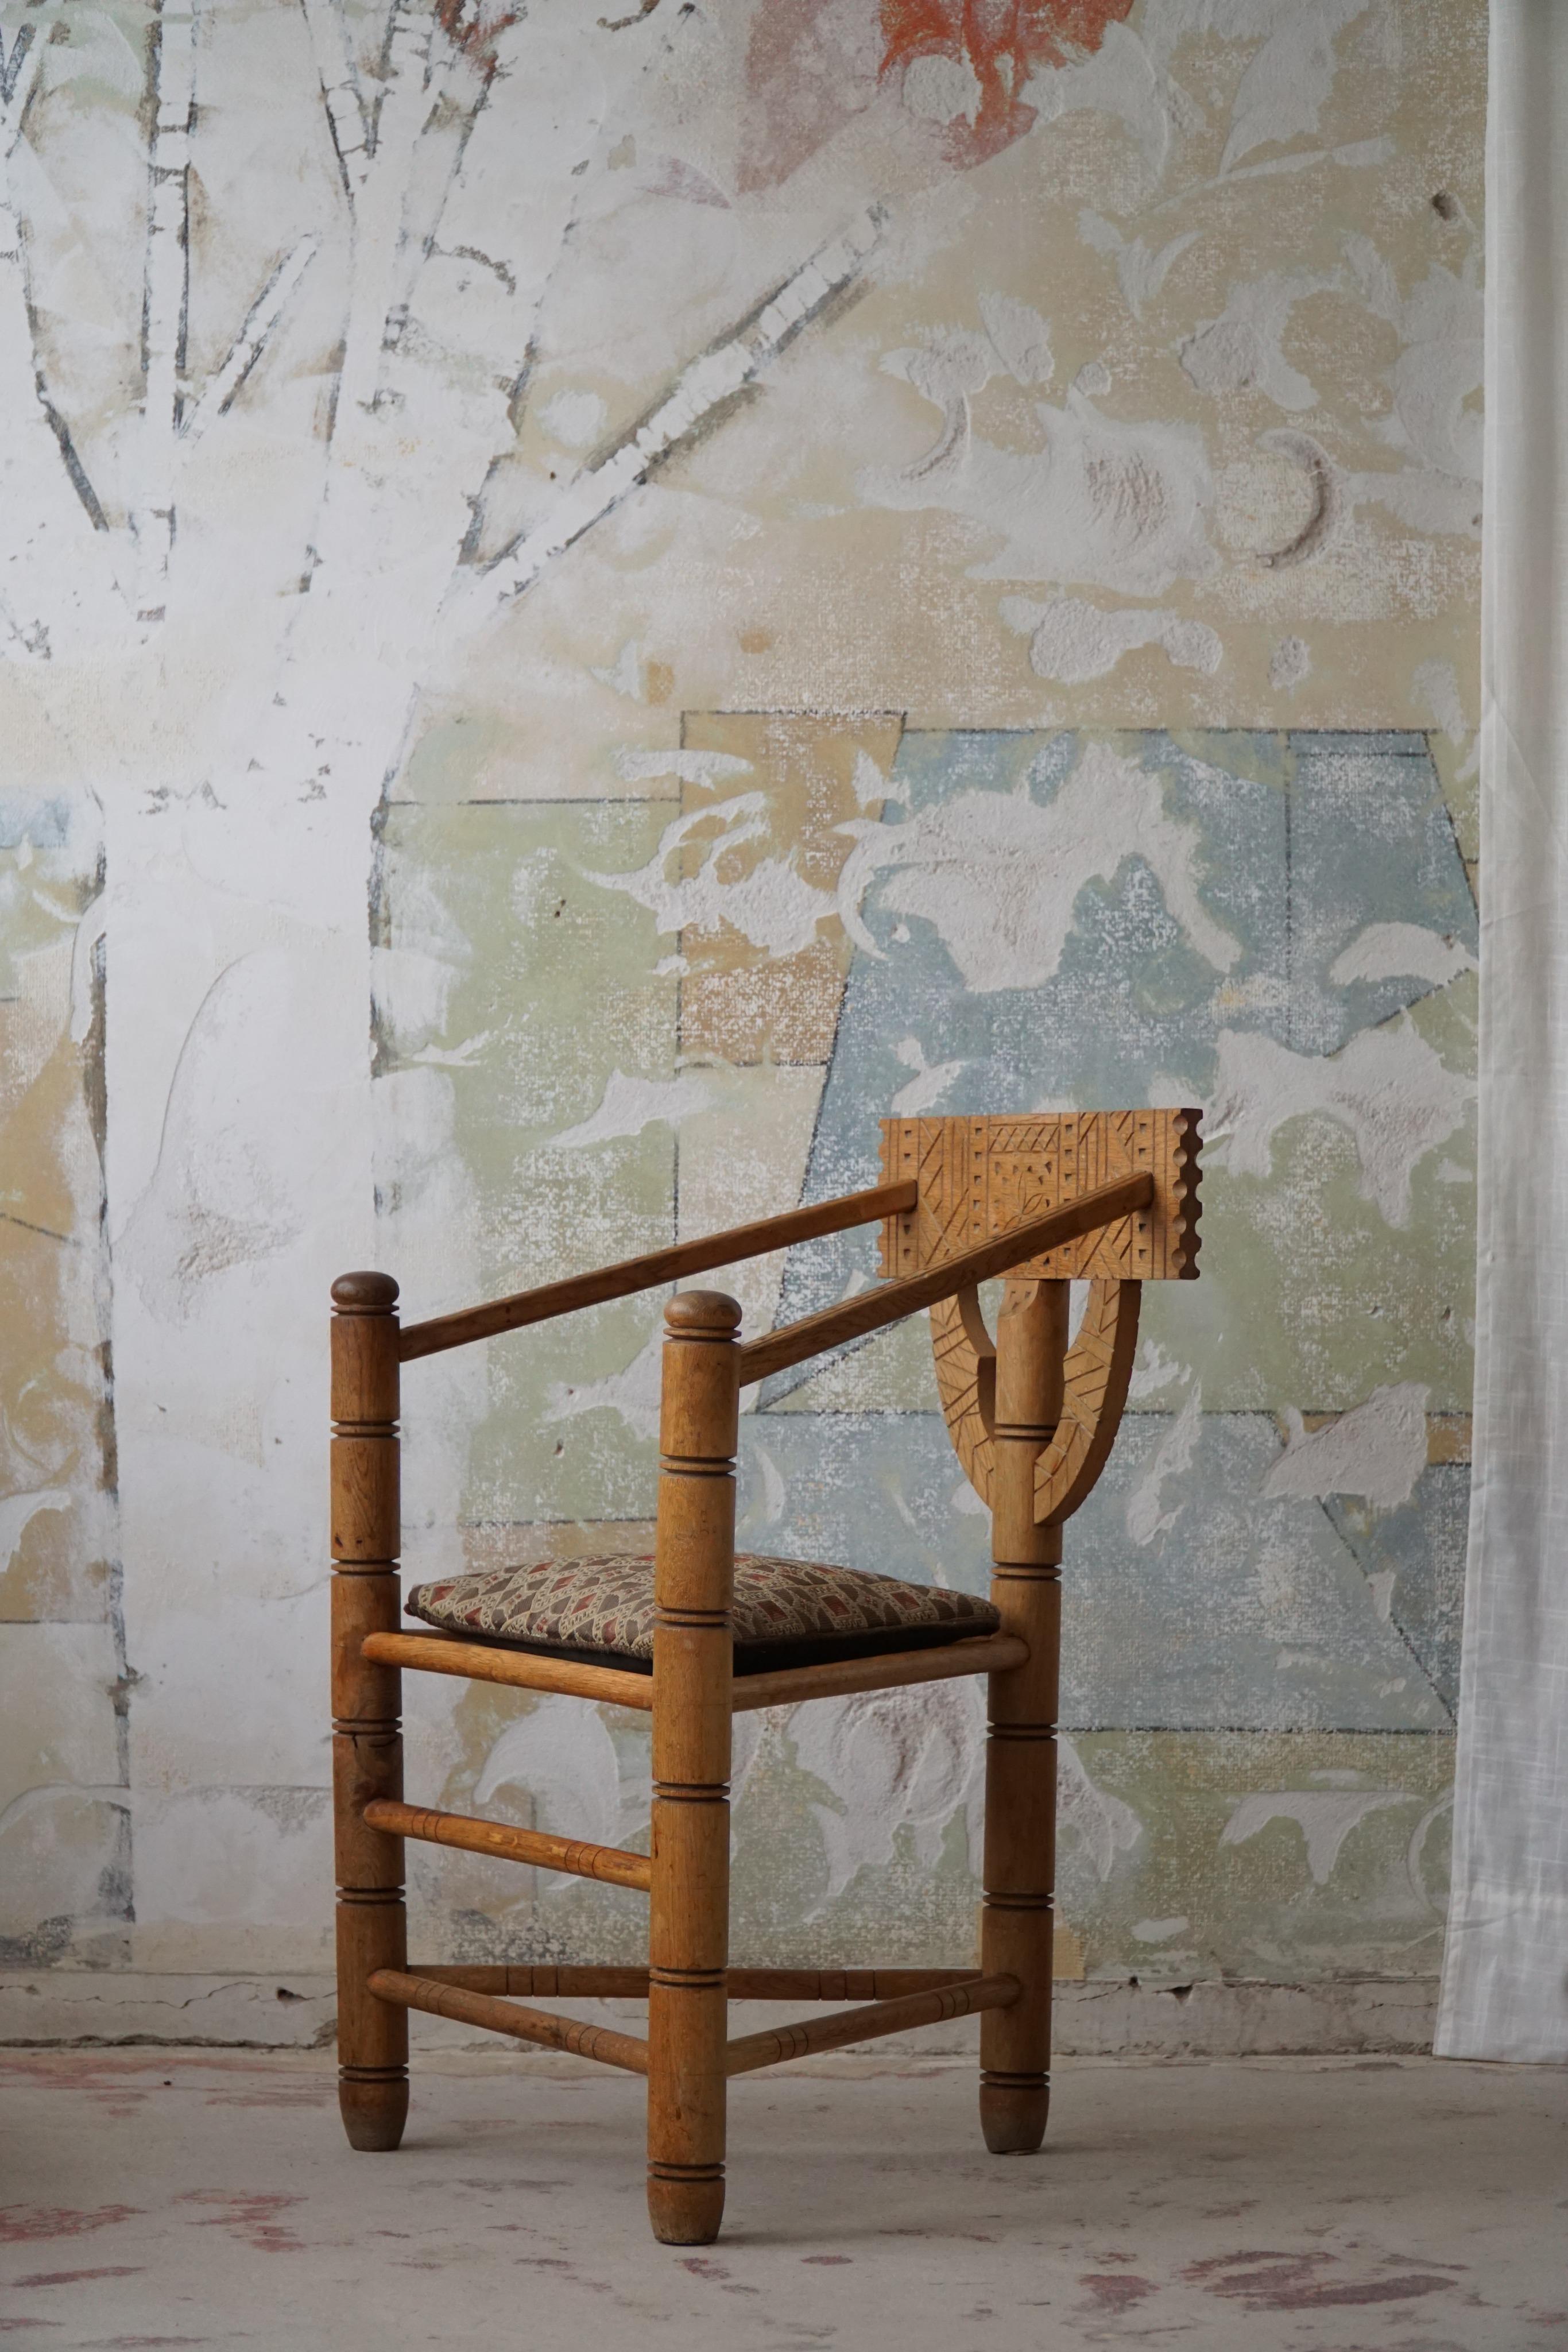 Une chaise Monk vintage sculpturale en chêne massif avec un coussin d'assise confortable. Sculptée par un ébéniste suédois au début du 20e siècle. Une chaise wabi sabi vraiment authentique dans un bon état général avec une belle patine.

Cet